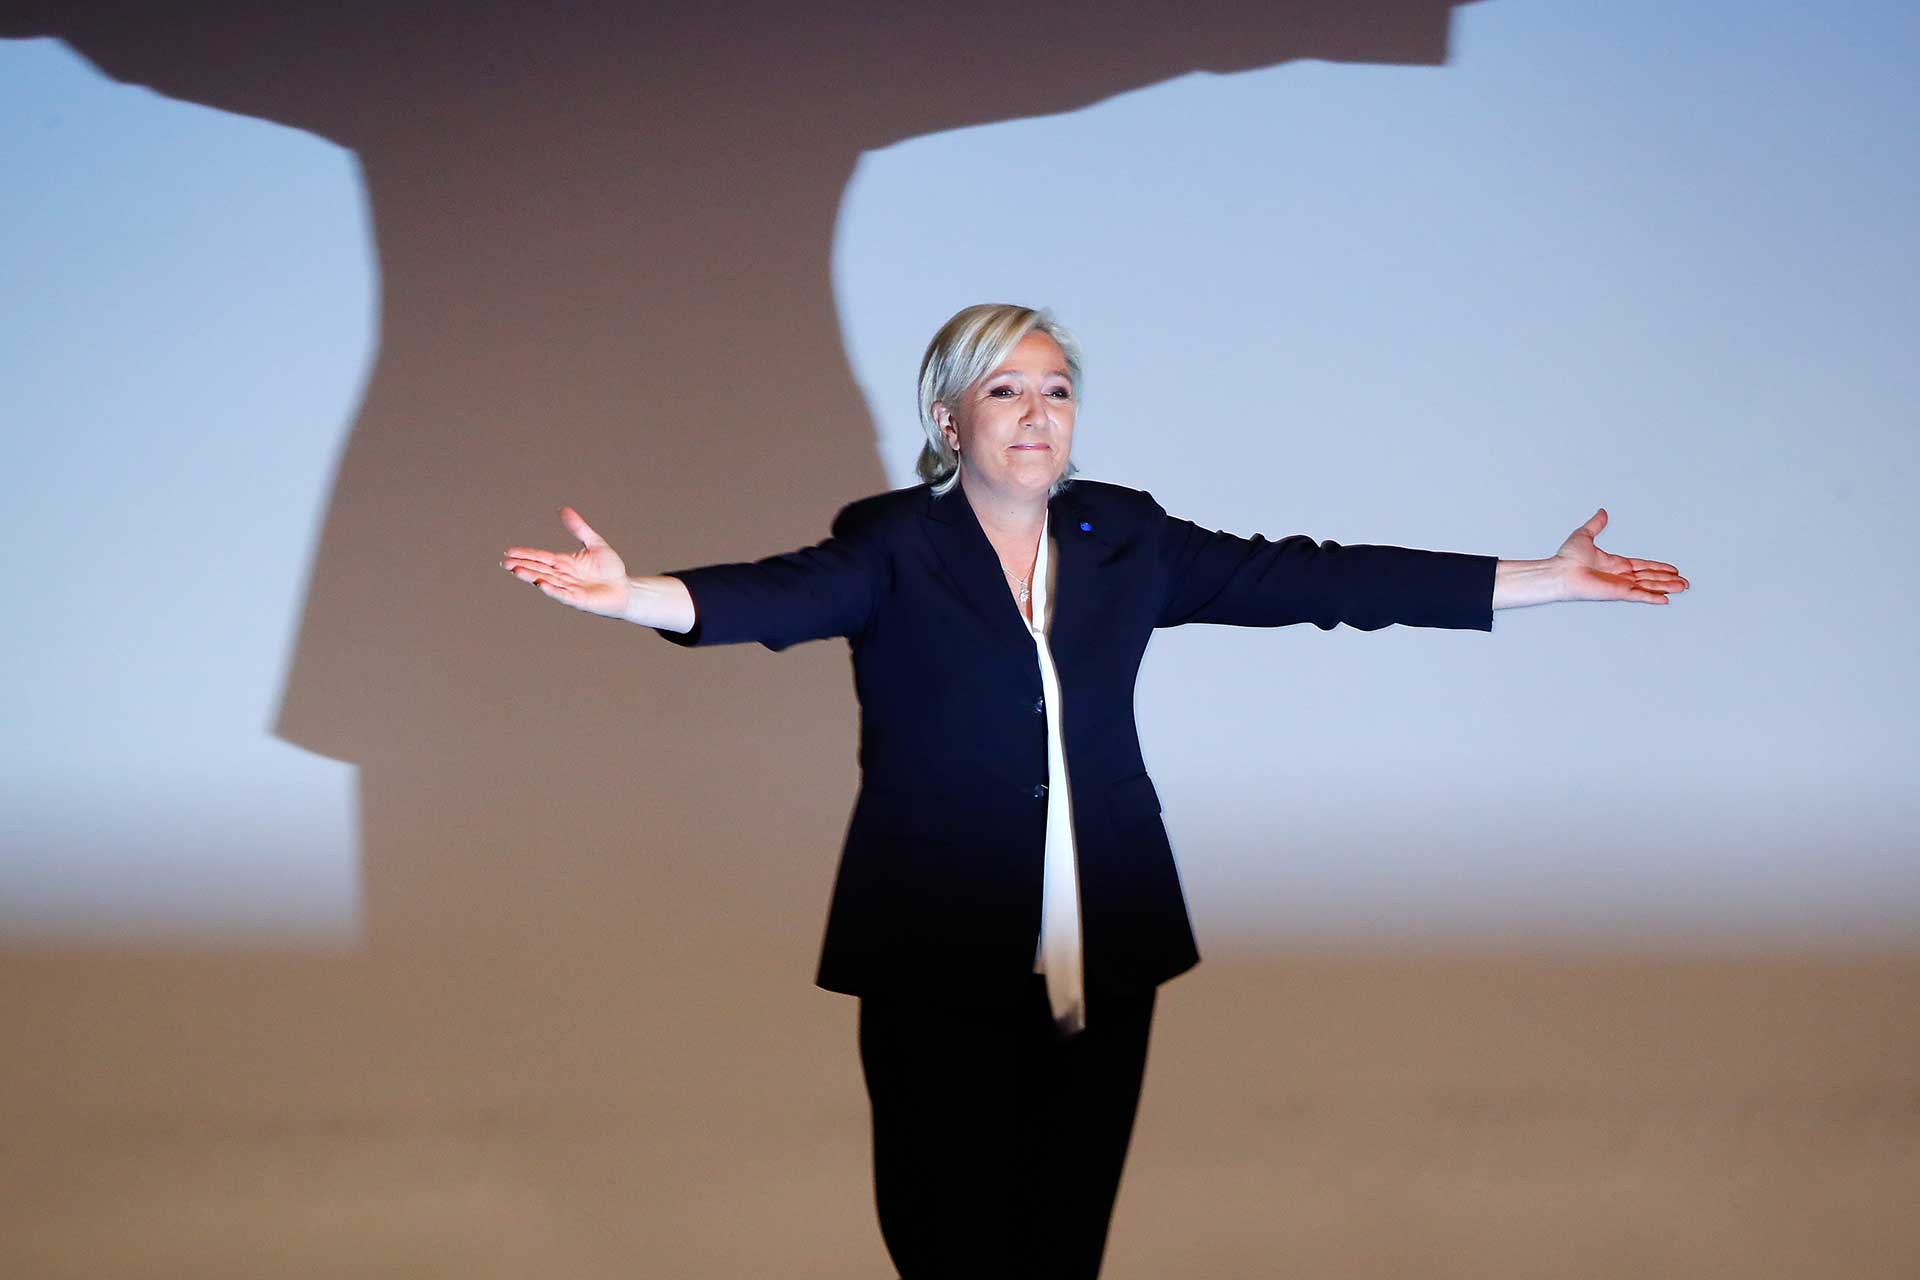 Le Pen encabeza los sondeos y Fillon no tiene garantizado pasar a la segunda vuelta